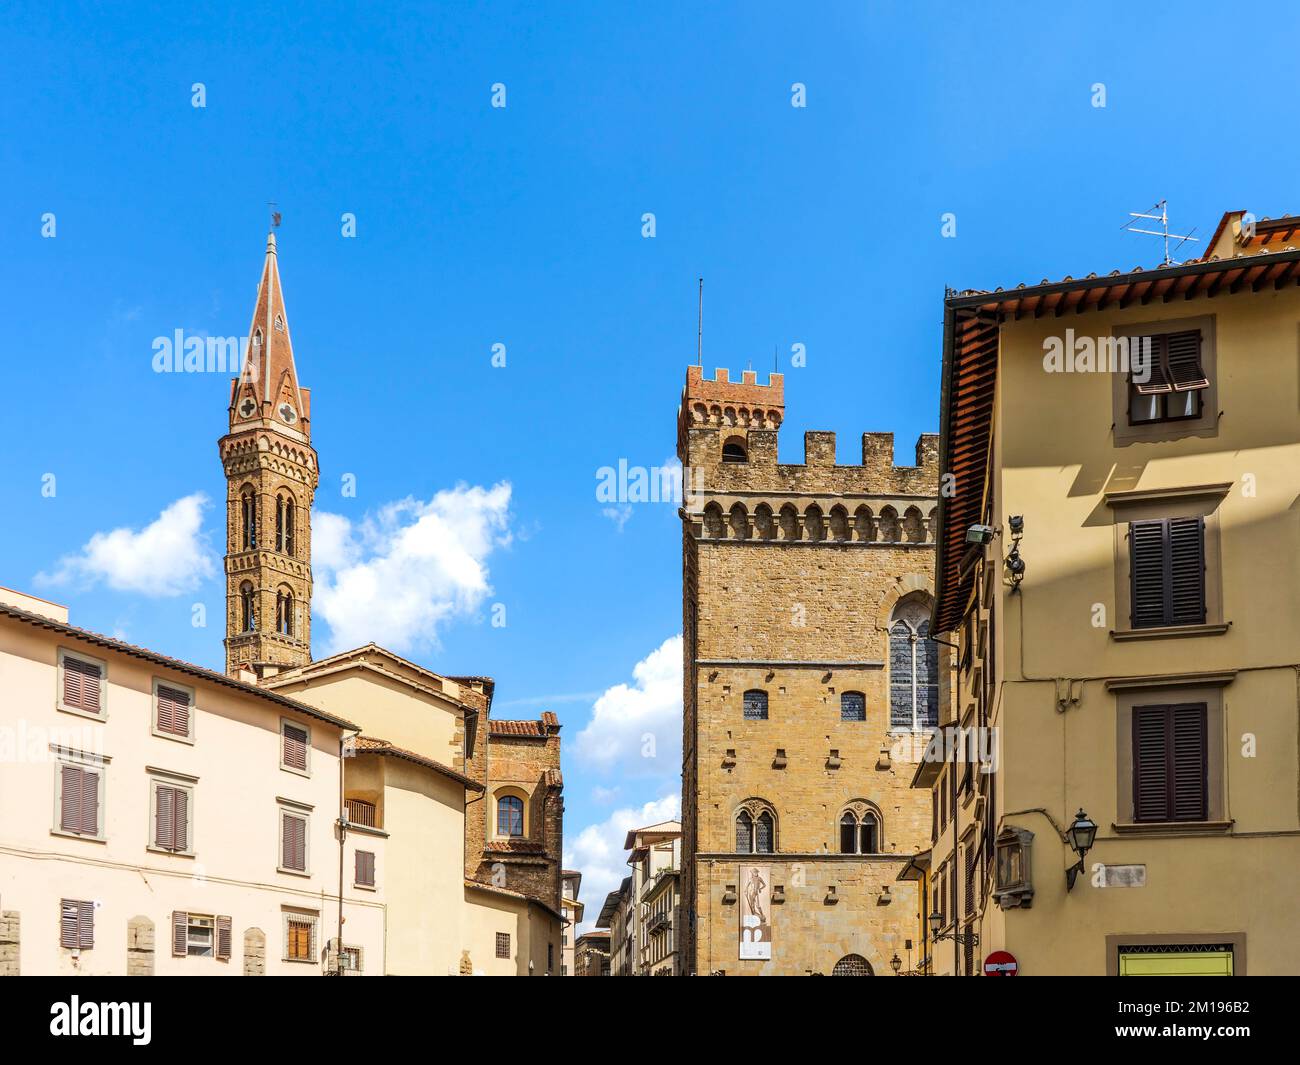 Piazza San Firenze, Platz mit alten Palästen, Schloss Bargello und Glockenturm der Kirche Badia Fiorentina, Stadtzentrum von Florenz, Toskana, Italien Stockfoto